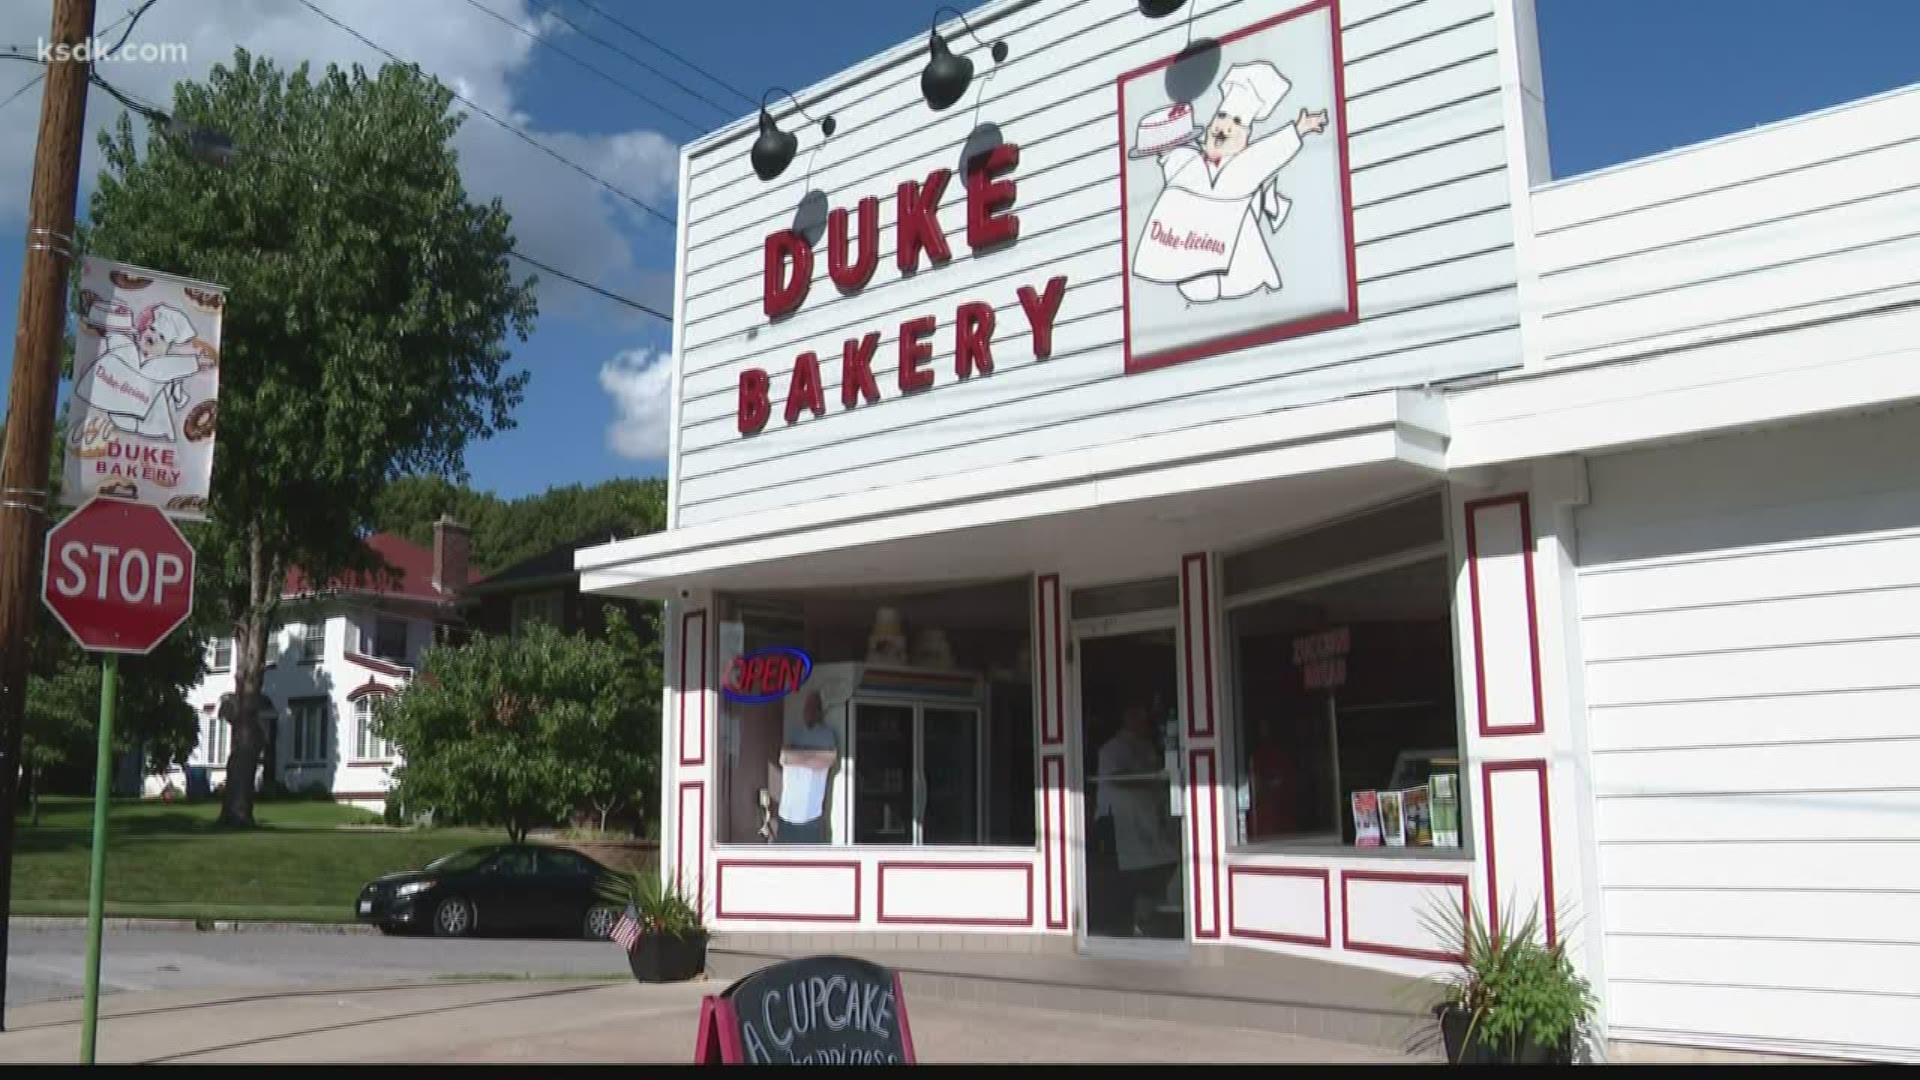 The Duke Bakery